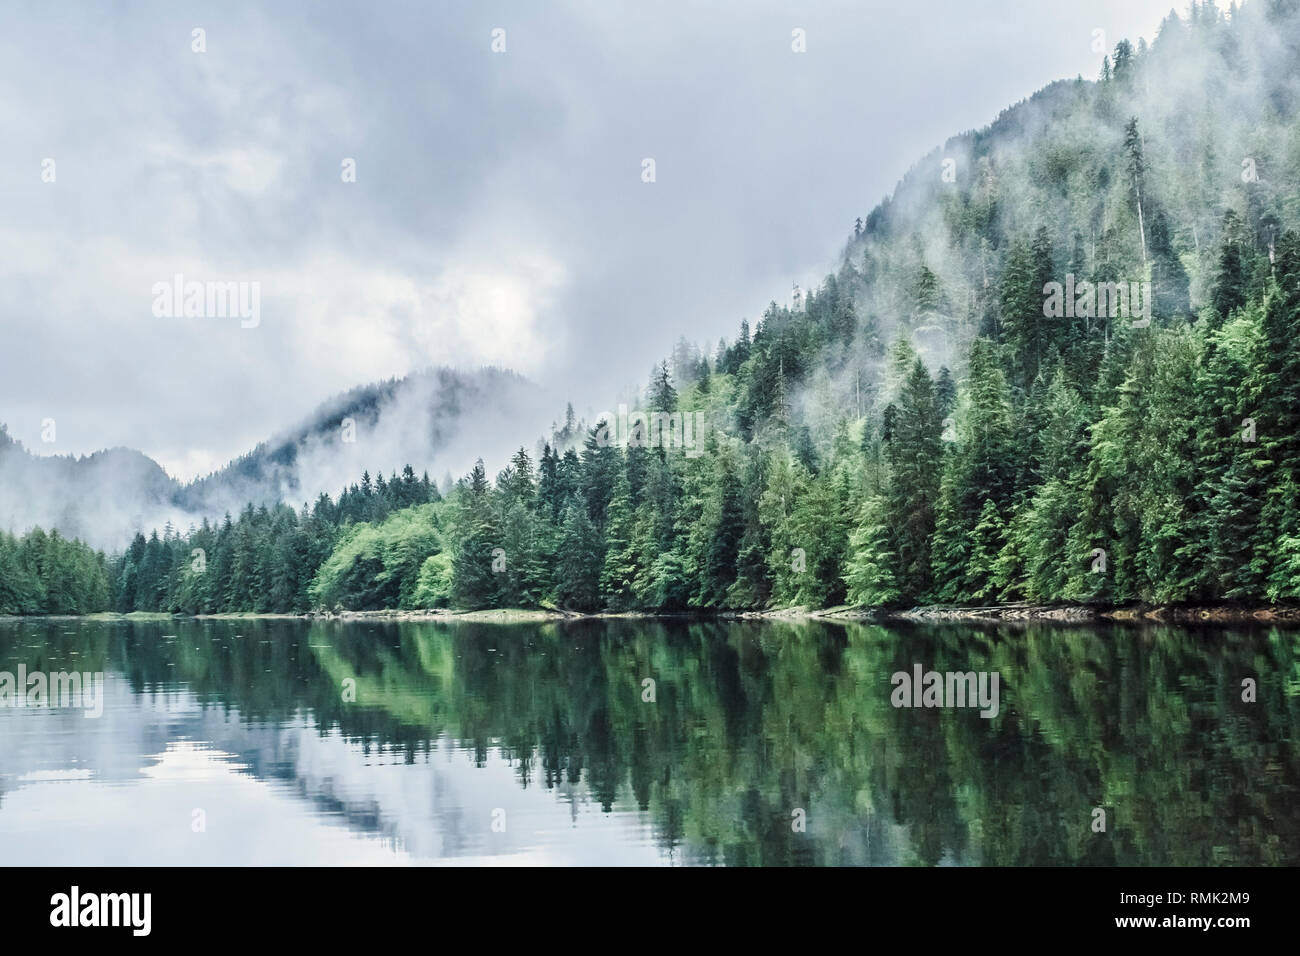 Niedrige Wolken treiben durch die Bäume in einem Förde in British Columbia, wo der Wald, Küste und Berge im ruhigen Wasser reflektiert werden. Stockfoto